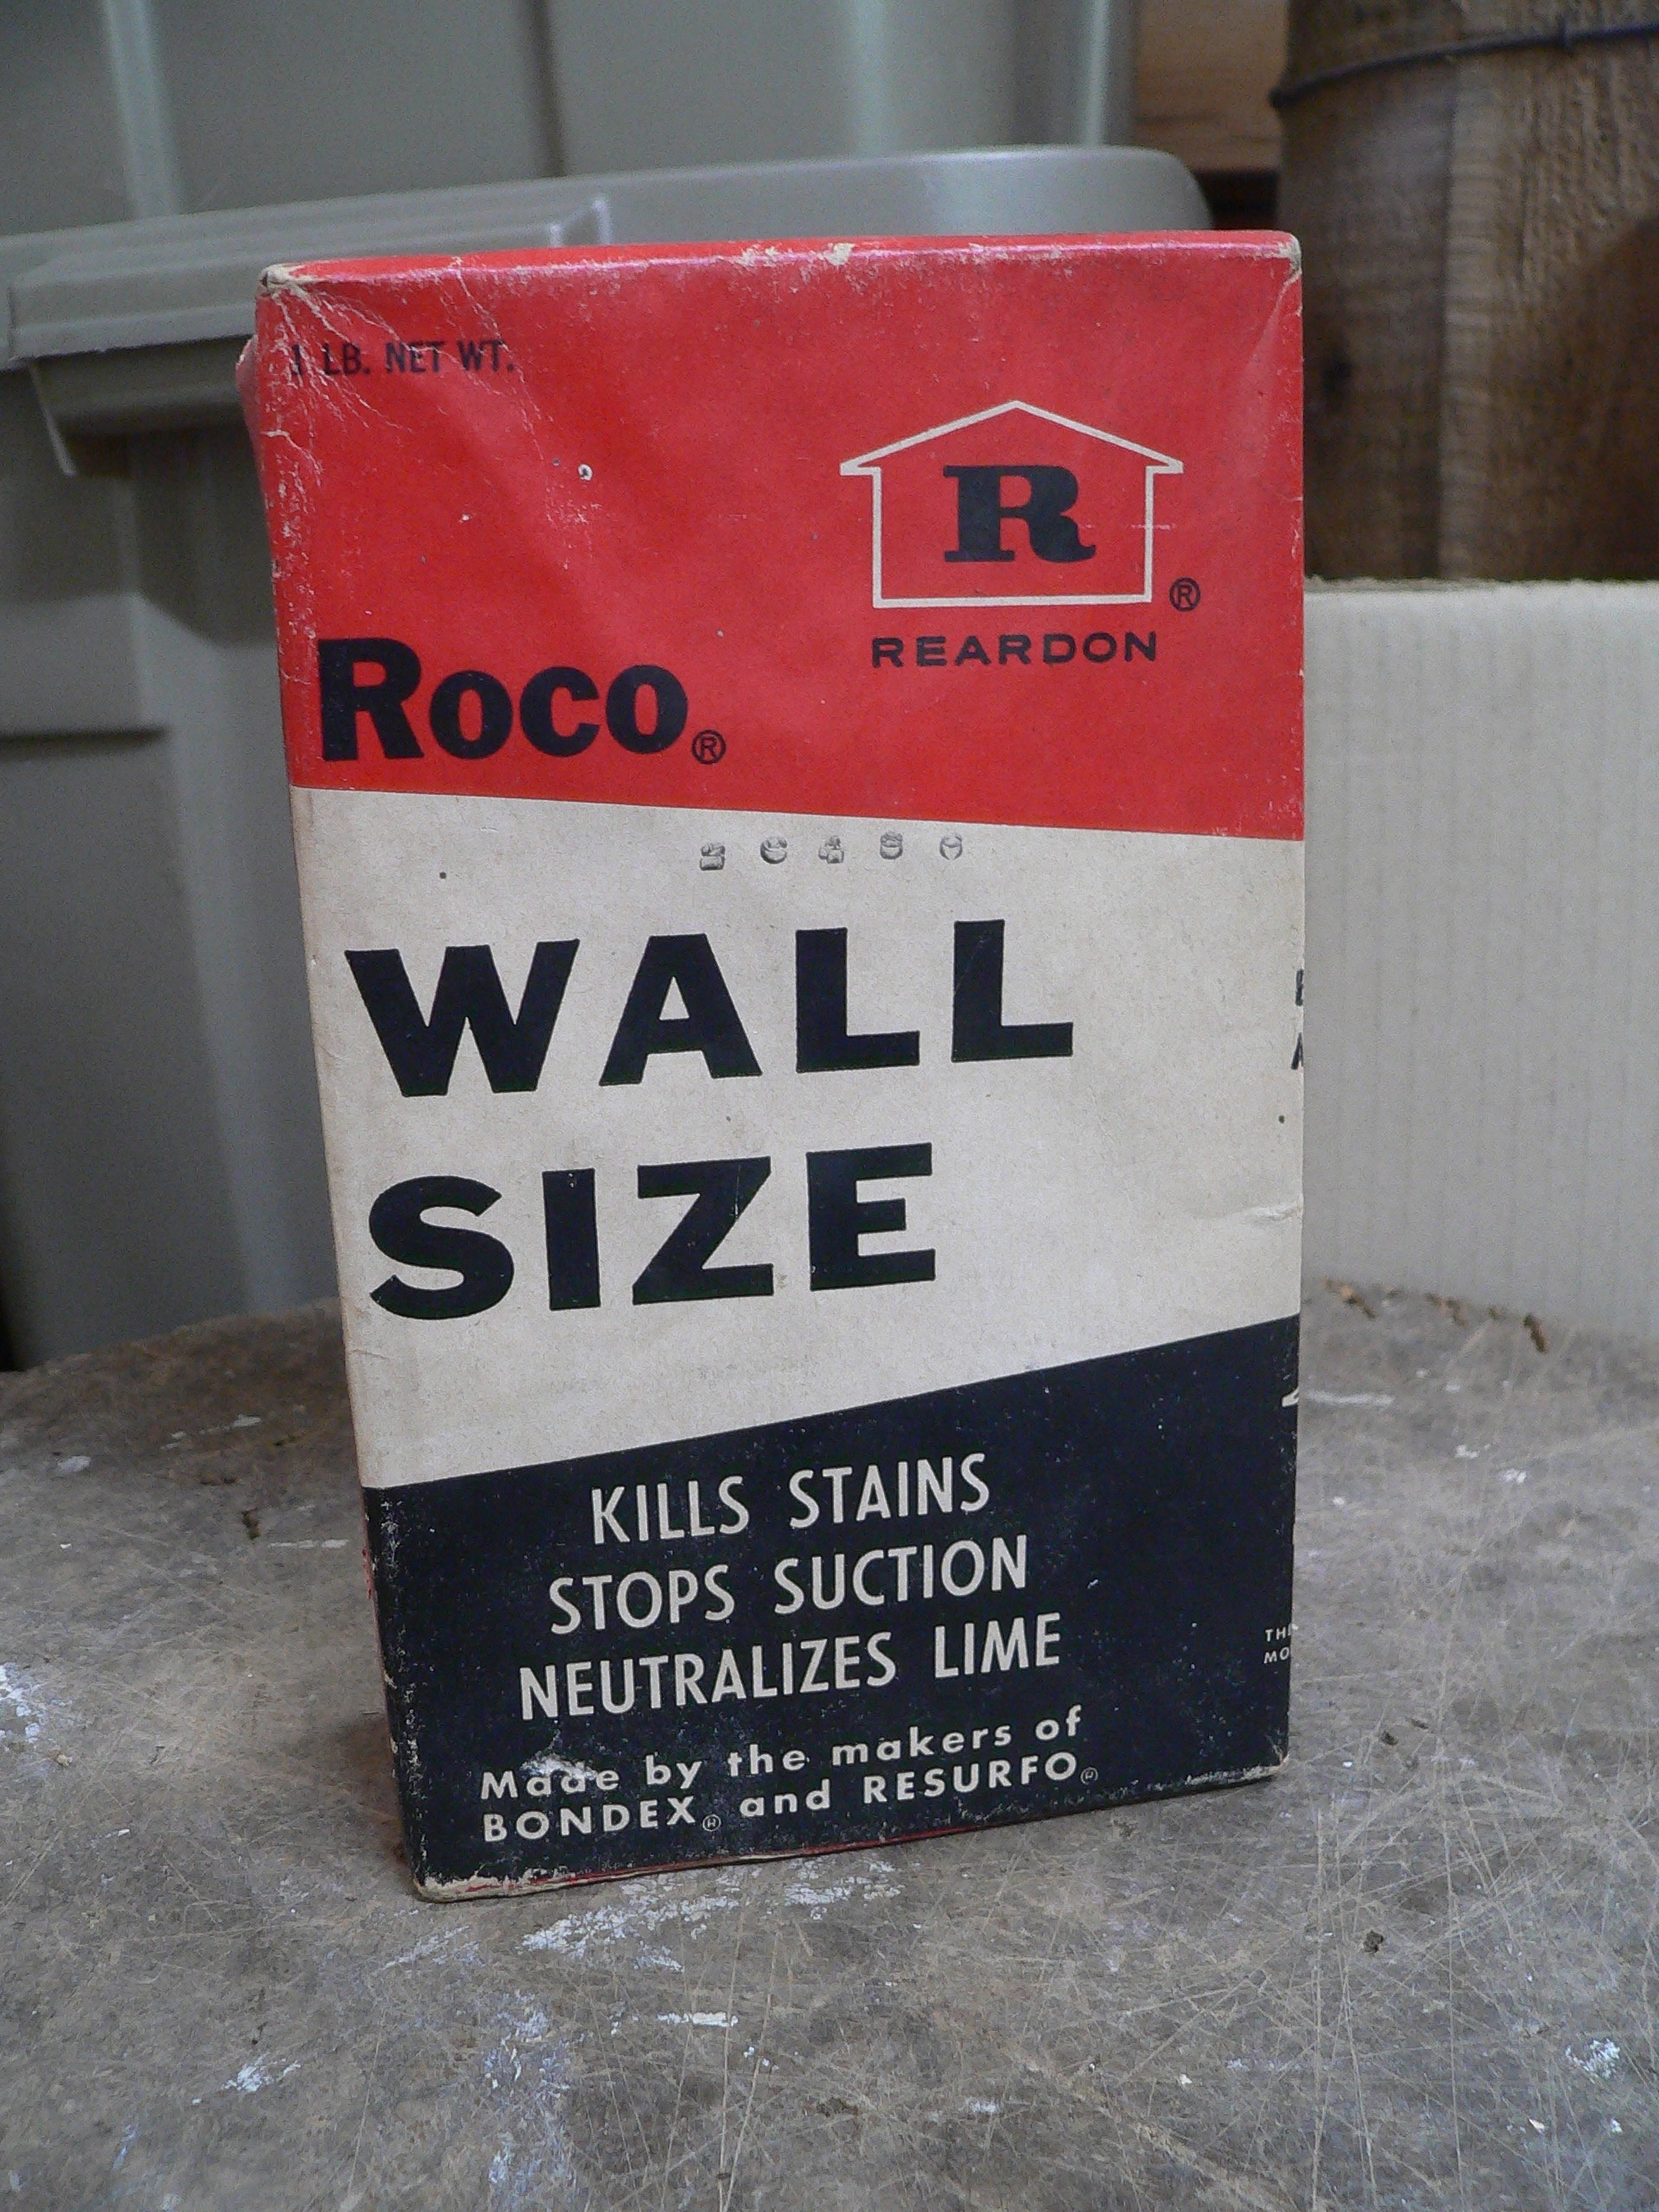 Boite roco wall size antique # 7439.1